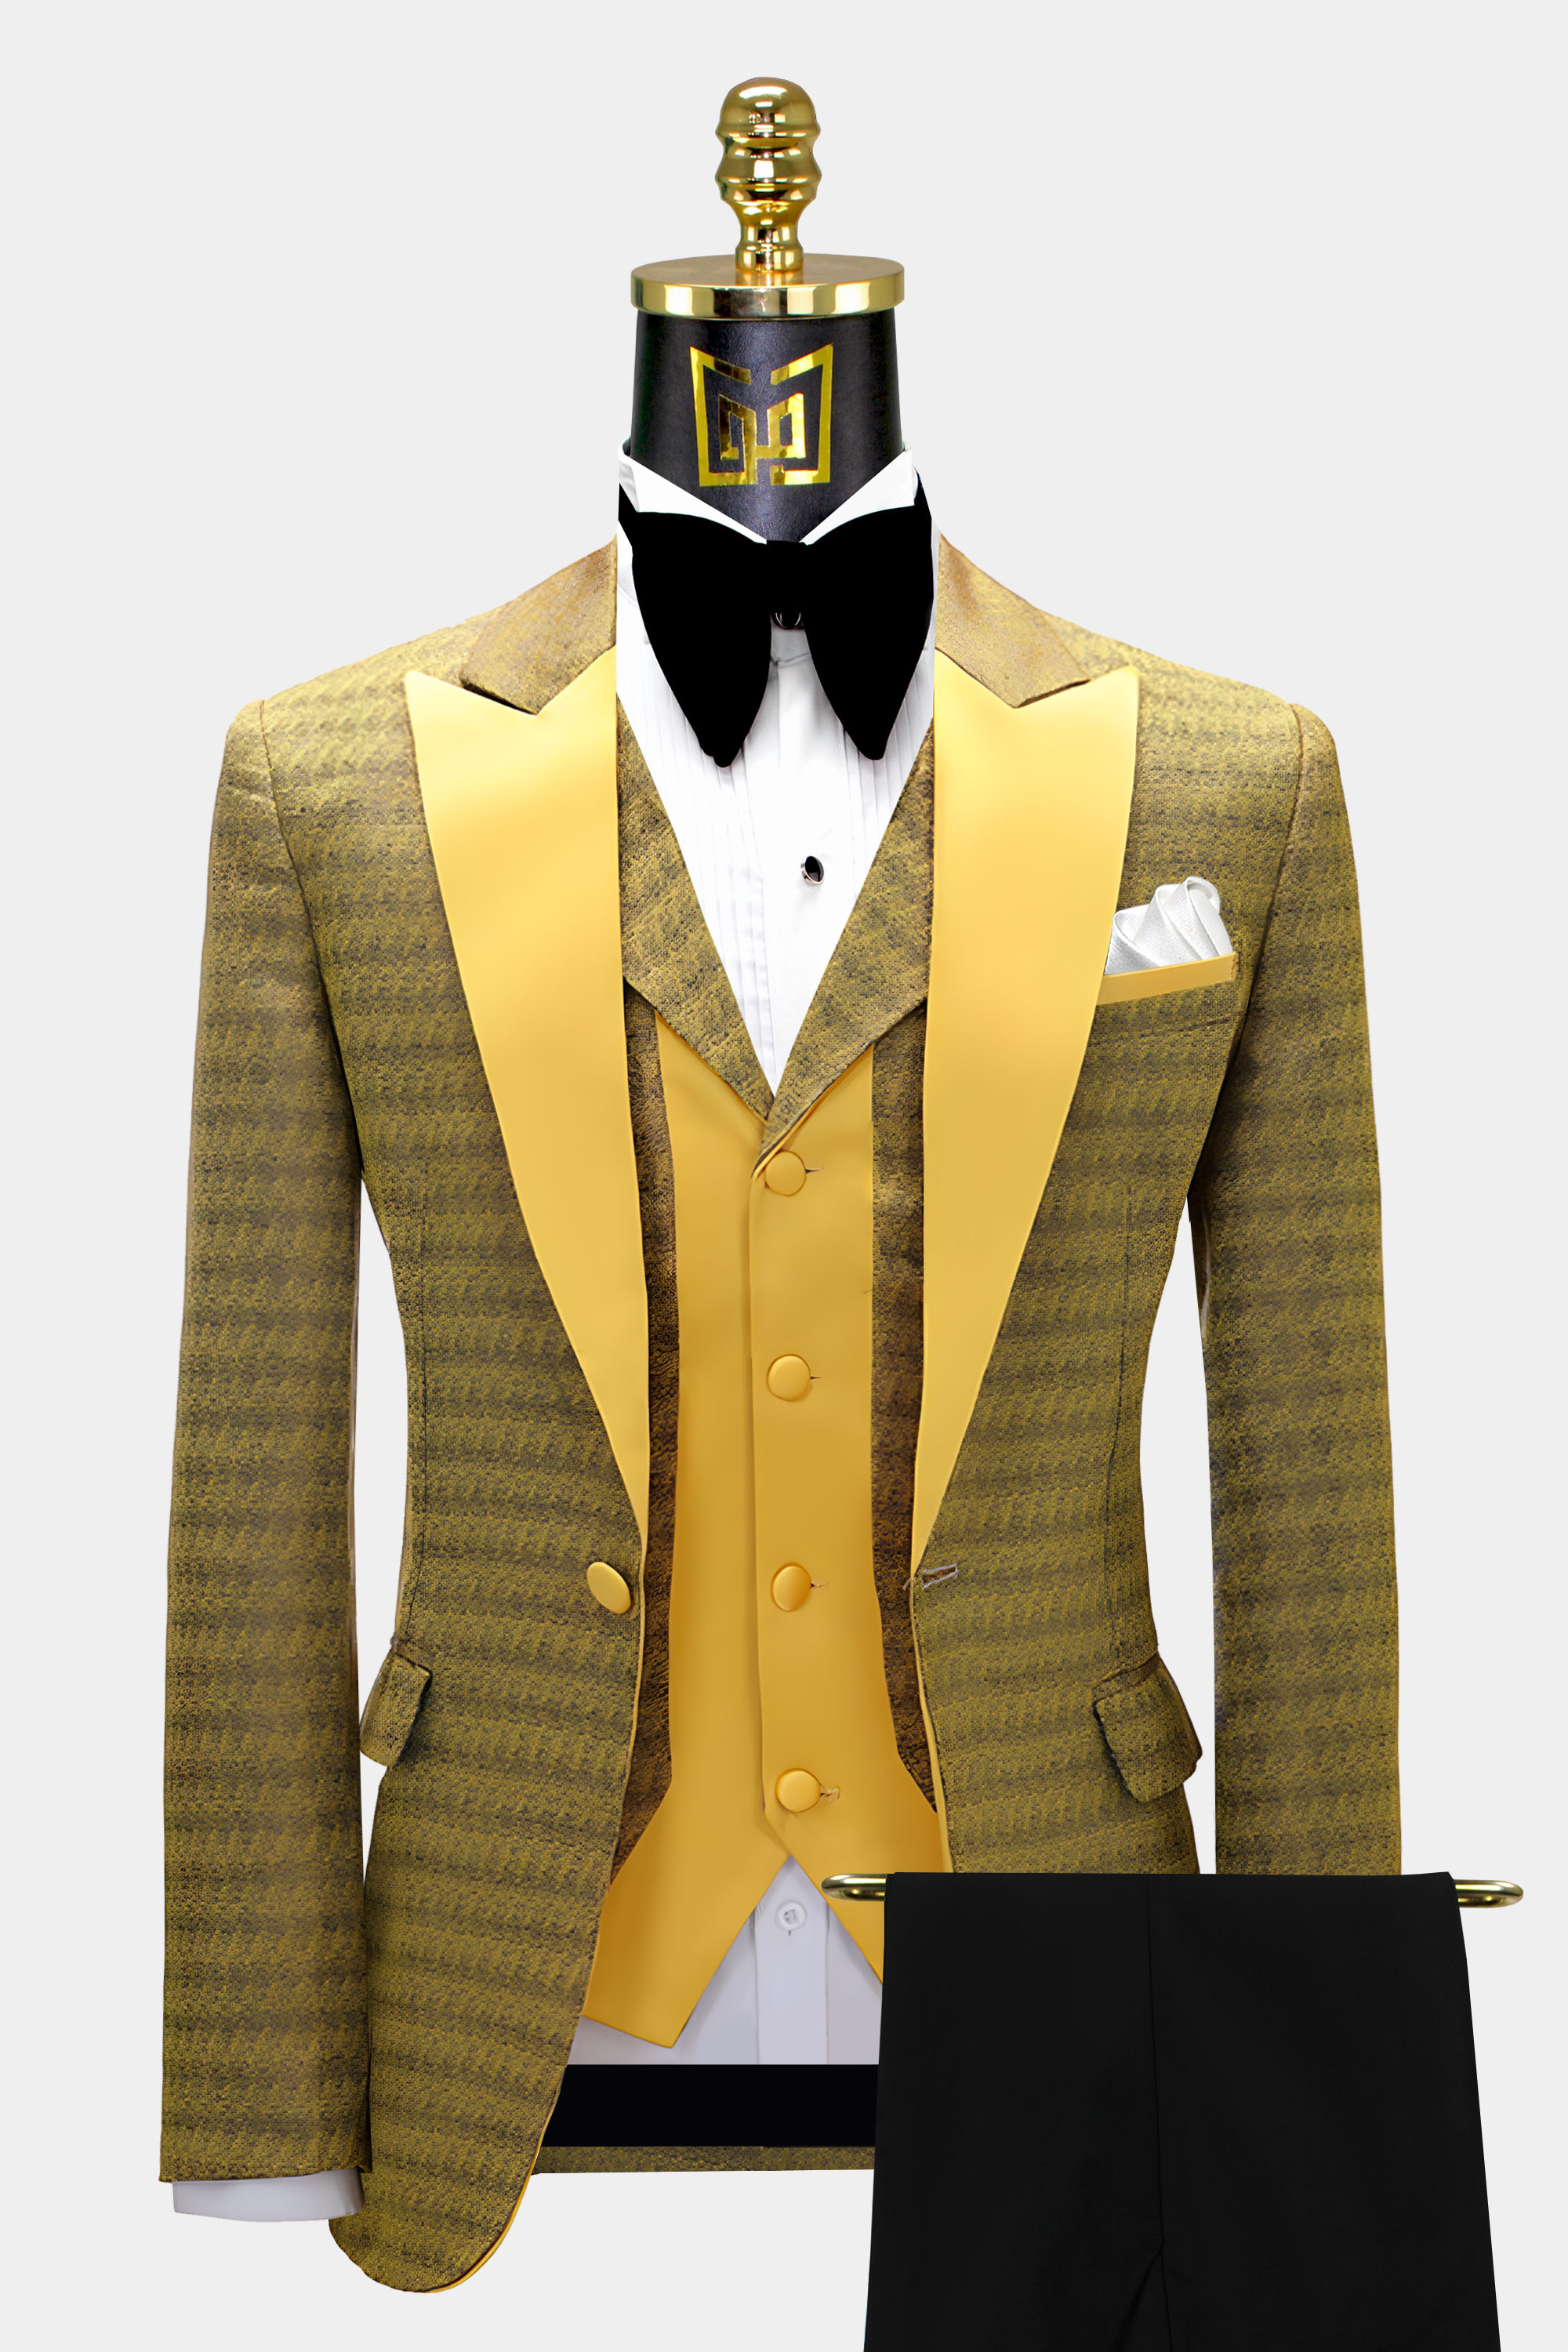 Golden-Suit-Wedding-Groom-Suit-from-Gentlemansguru.com